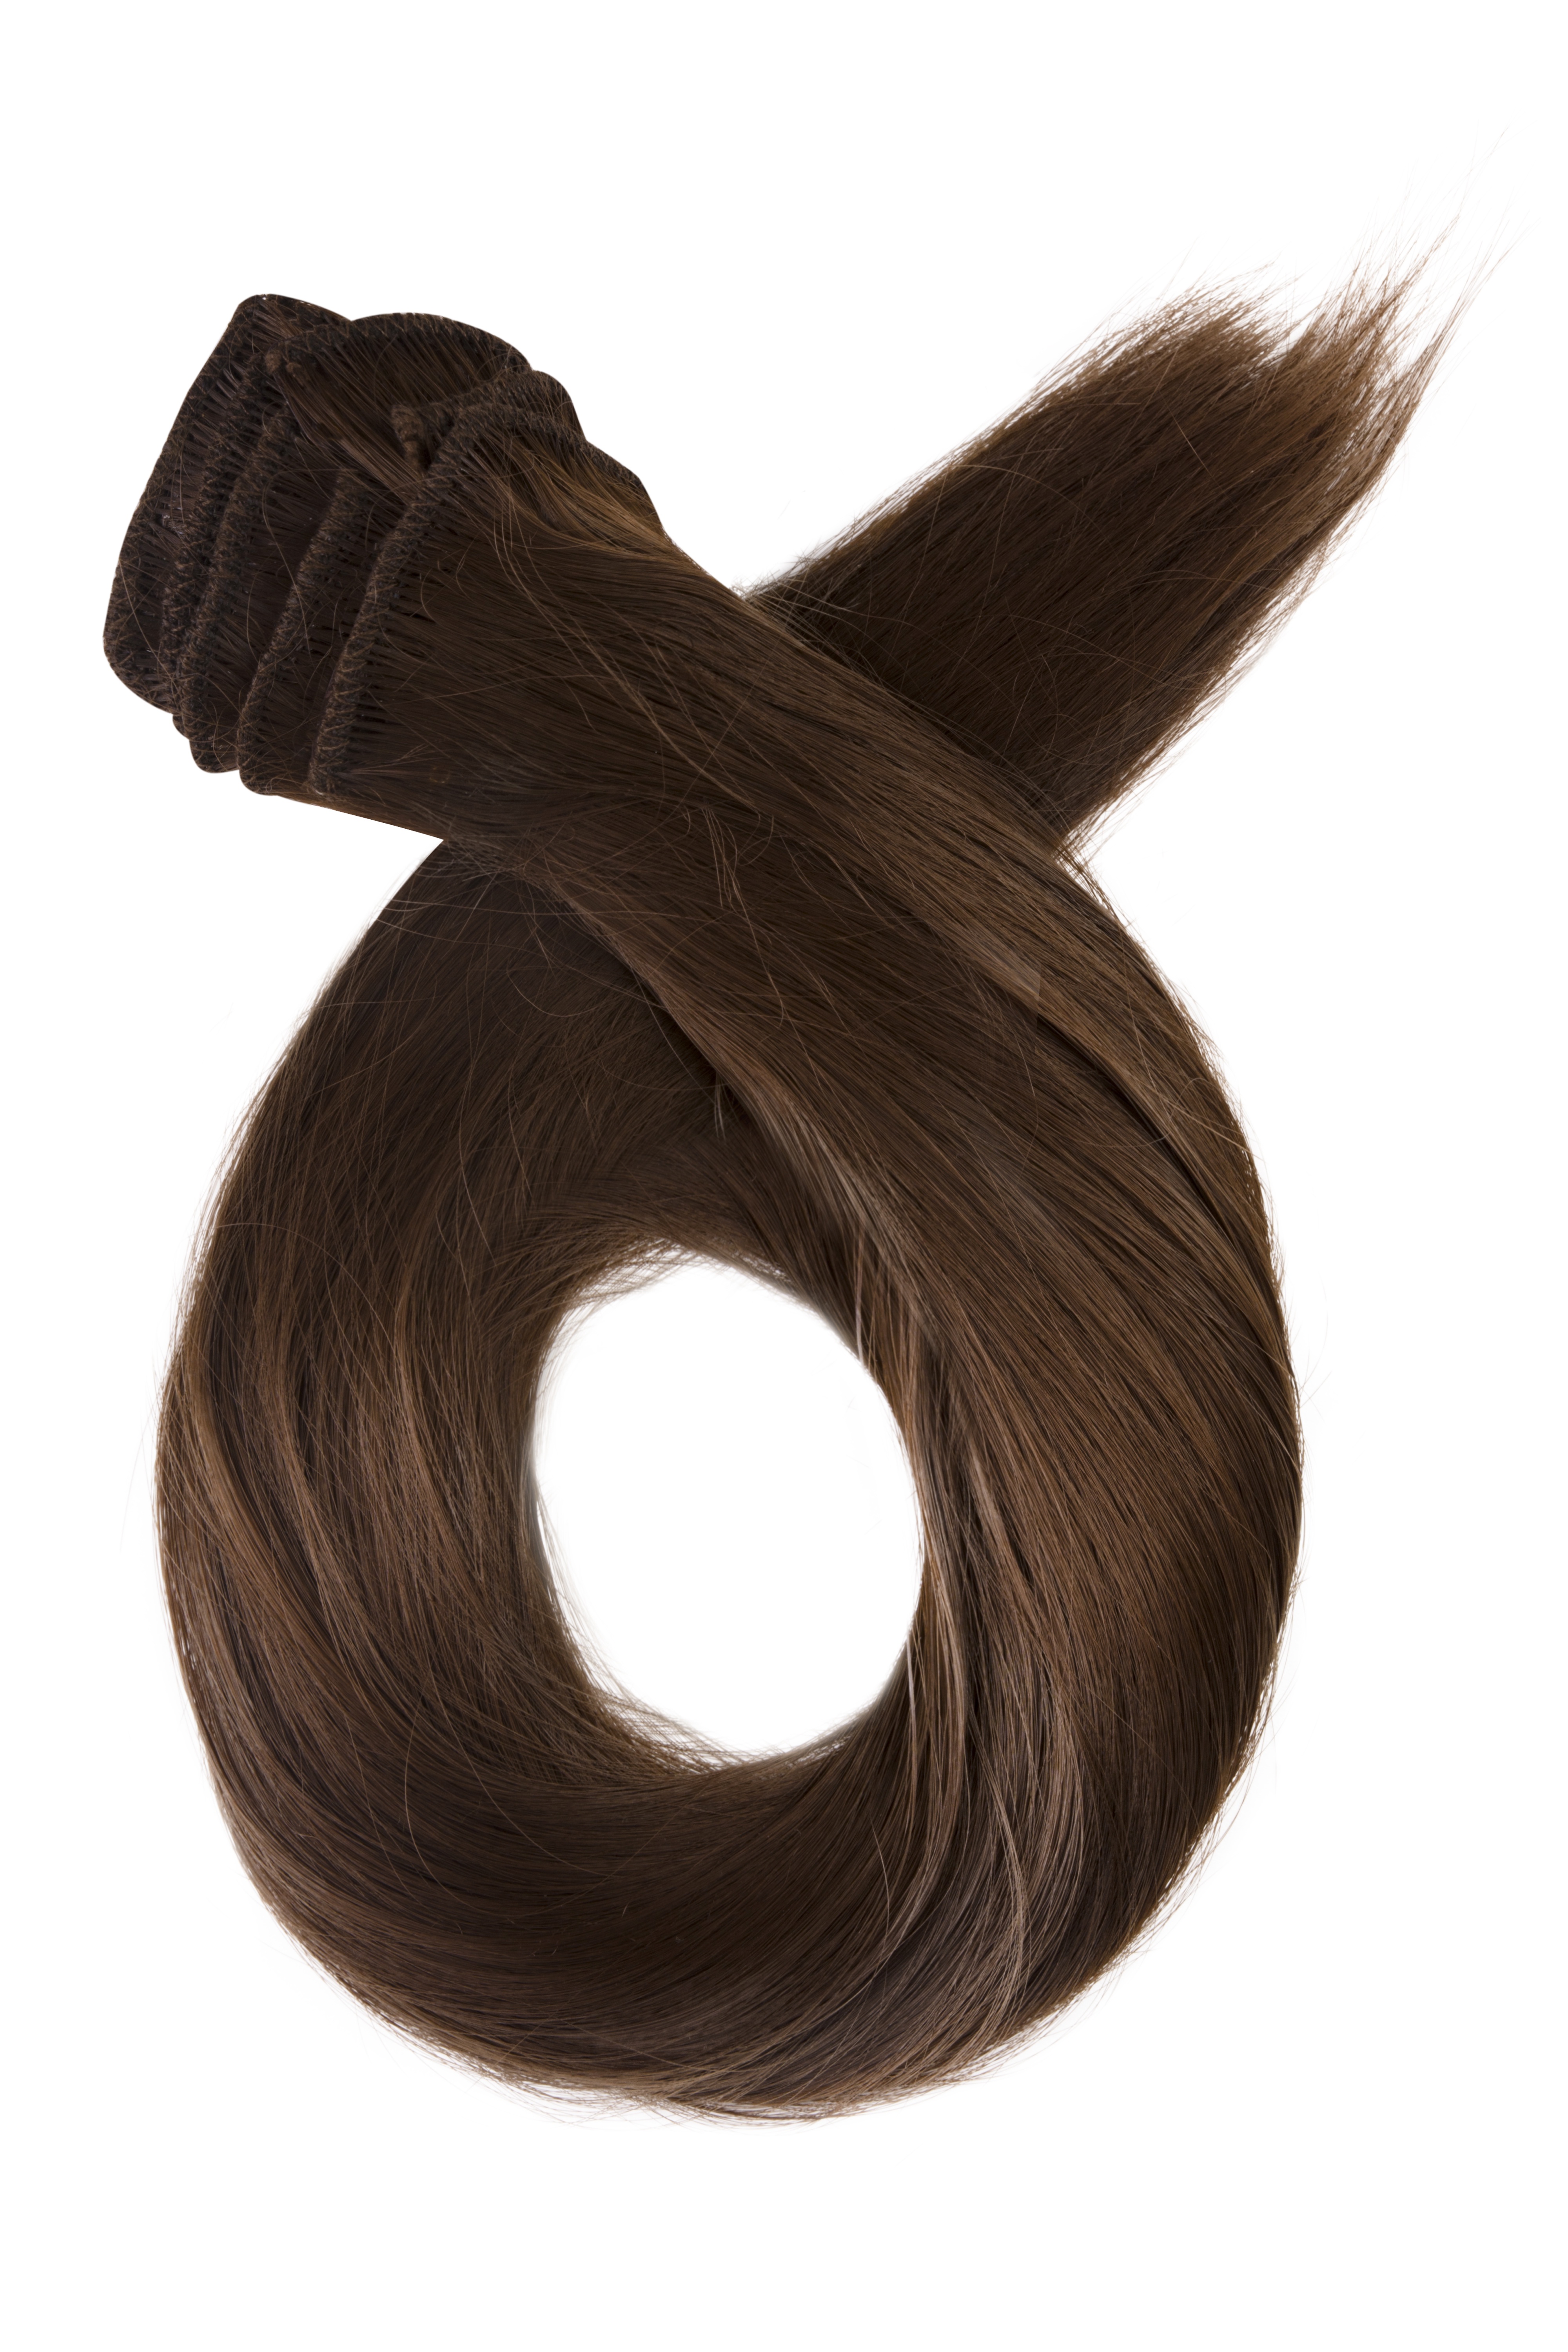 Prírodne hnedé clip in vlasy, 60cm, 150g, farba 8